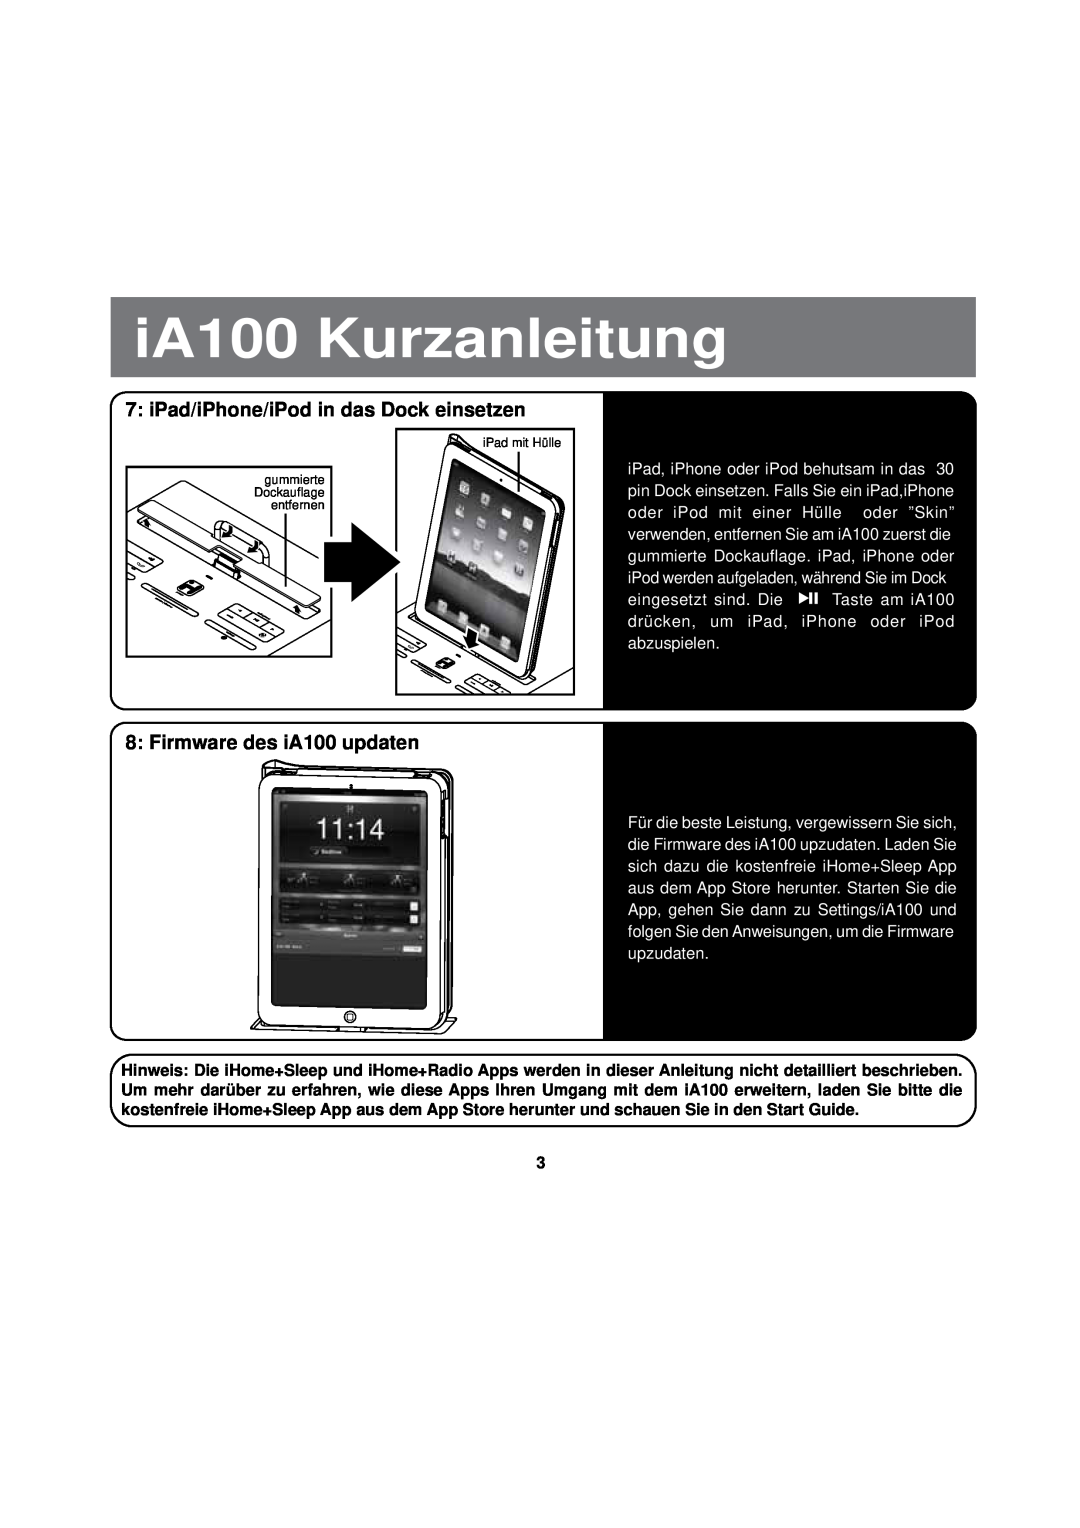 iHome manual iPad/iPhone/iPod in das Dock einsetzen, Firmware des iA100 updaten, iA100 Kurzanleitung 